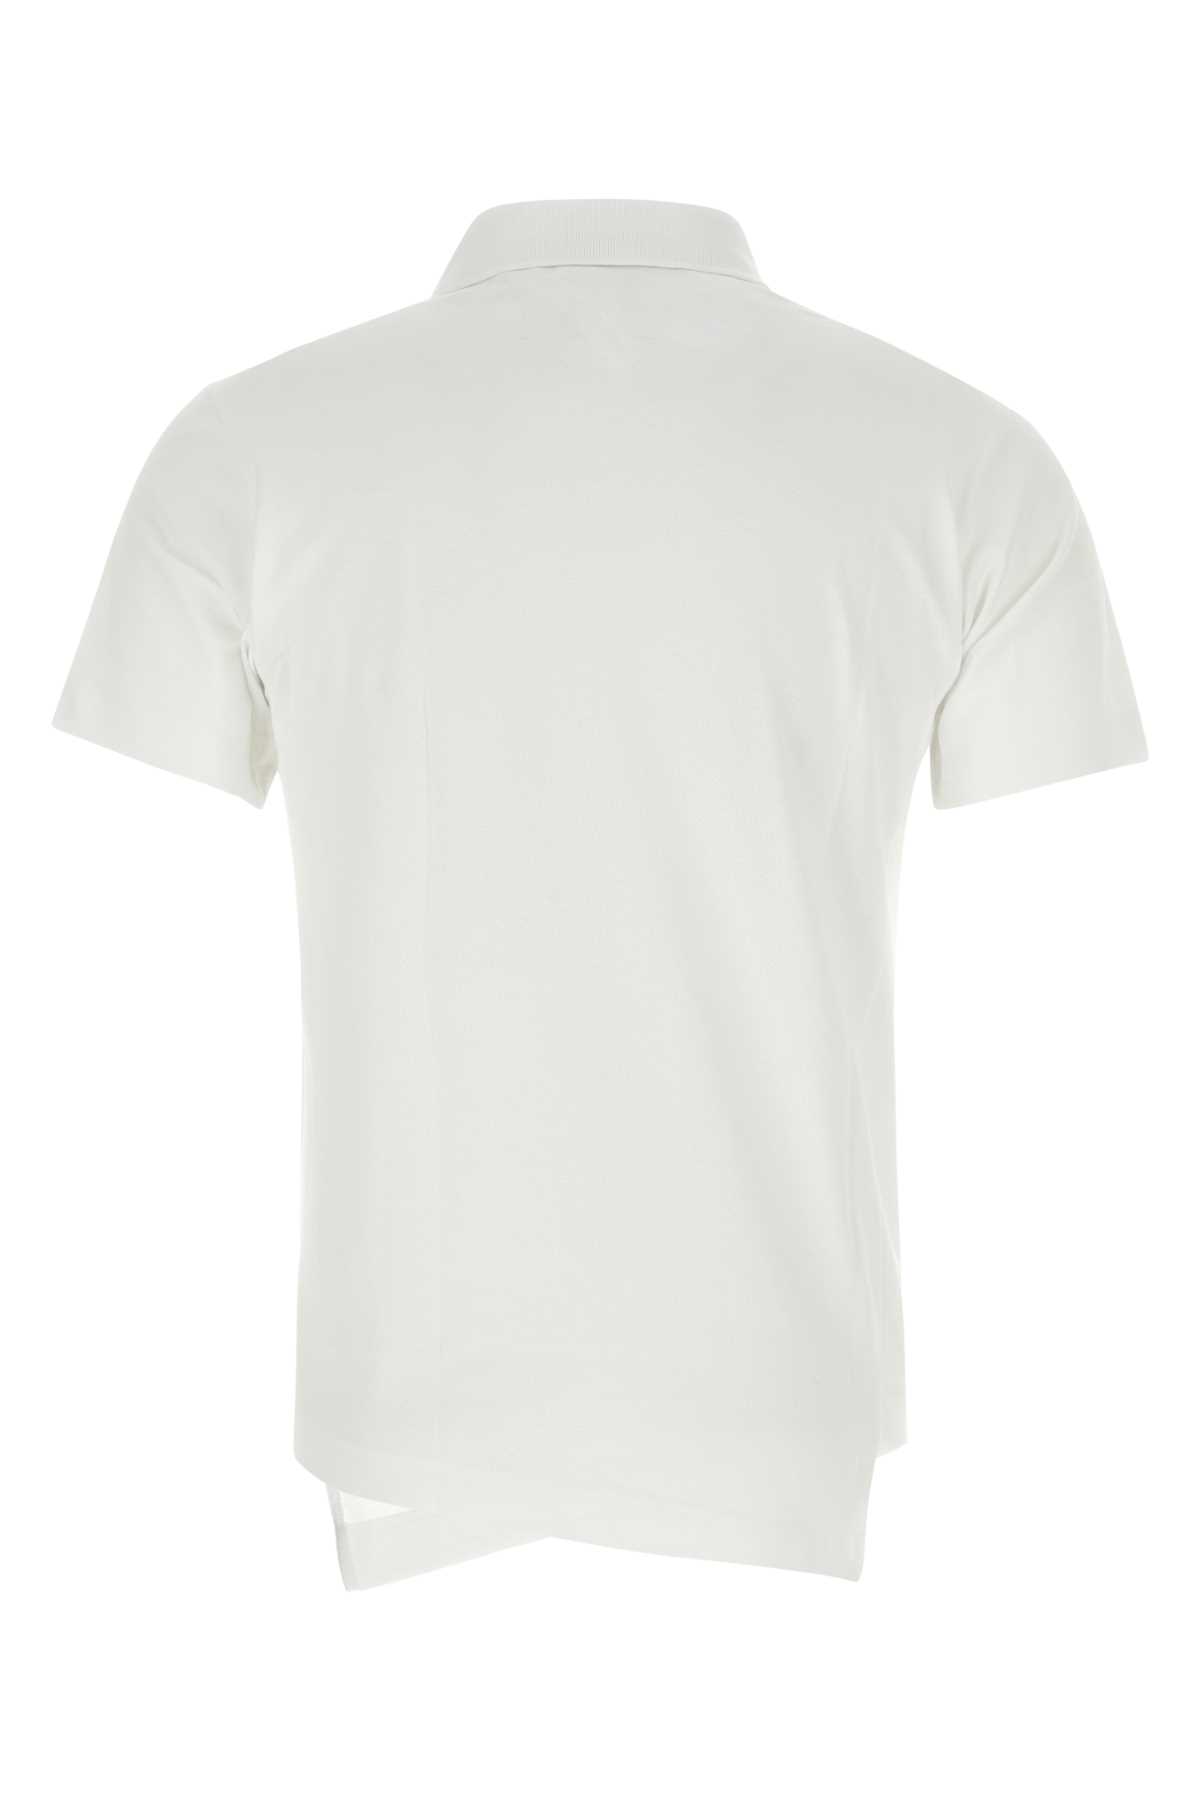 Comme Des Garçons Shirt White Piquet Comme Des Garã§ons Shirt X Lacoste Polo Shirt